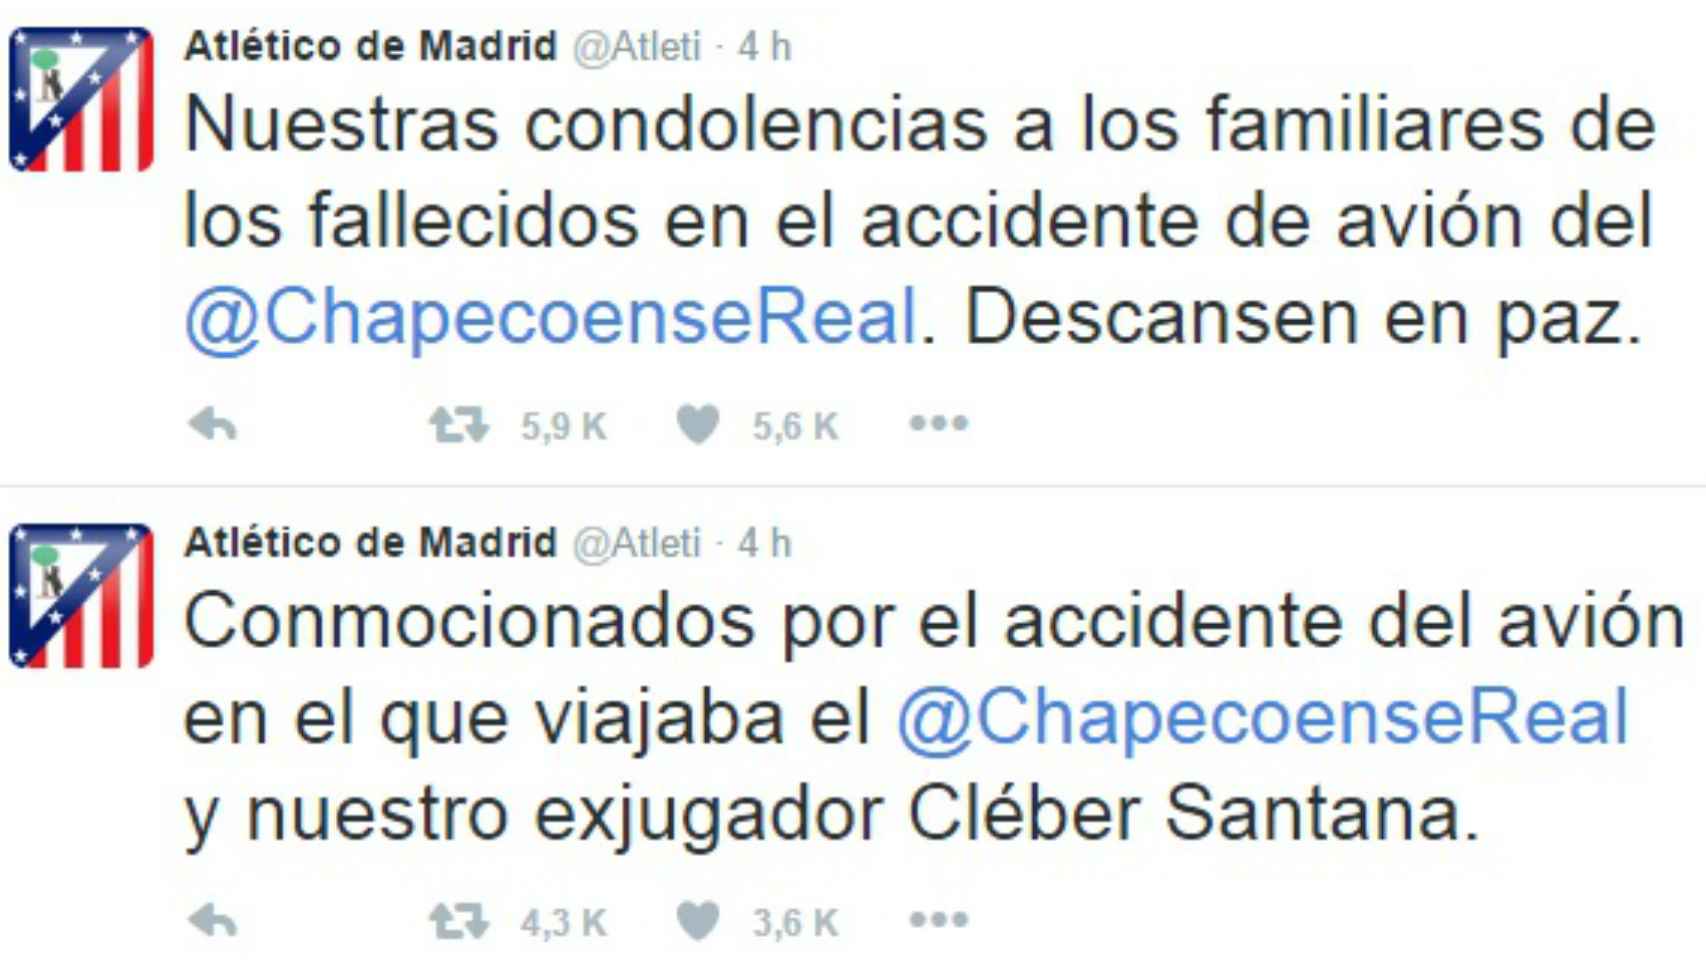 Tuits de la cuenta de Twitter del Atlético de Madrid.